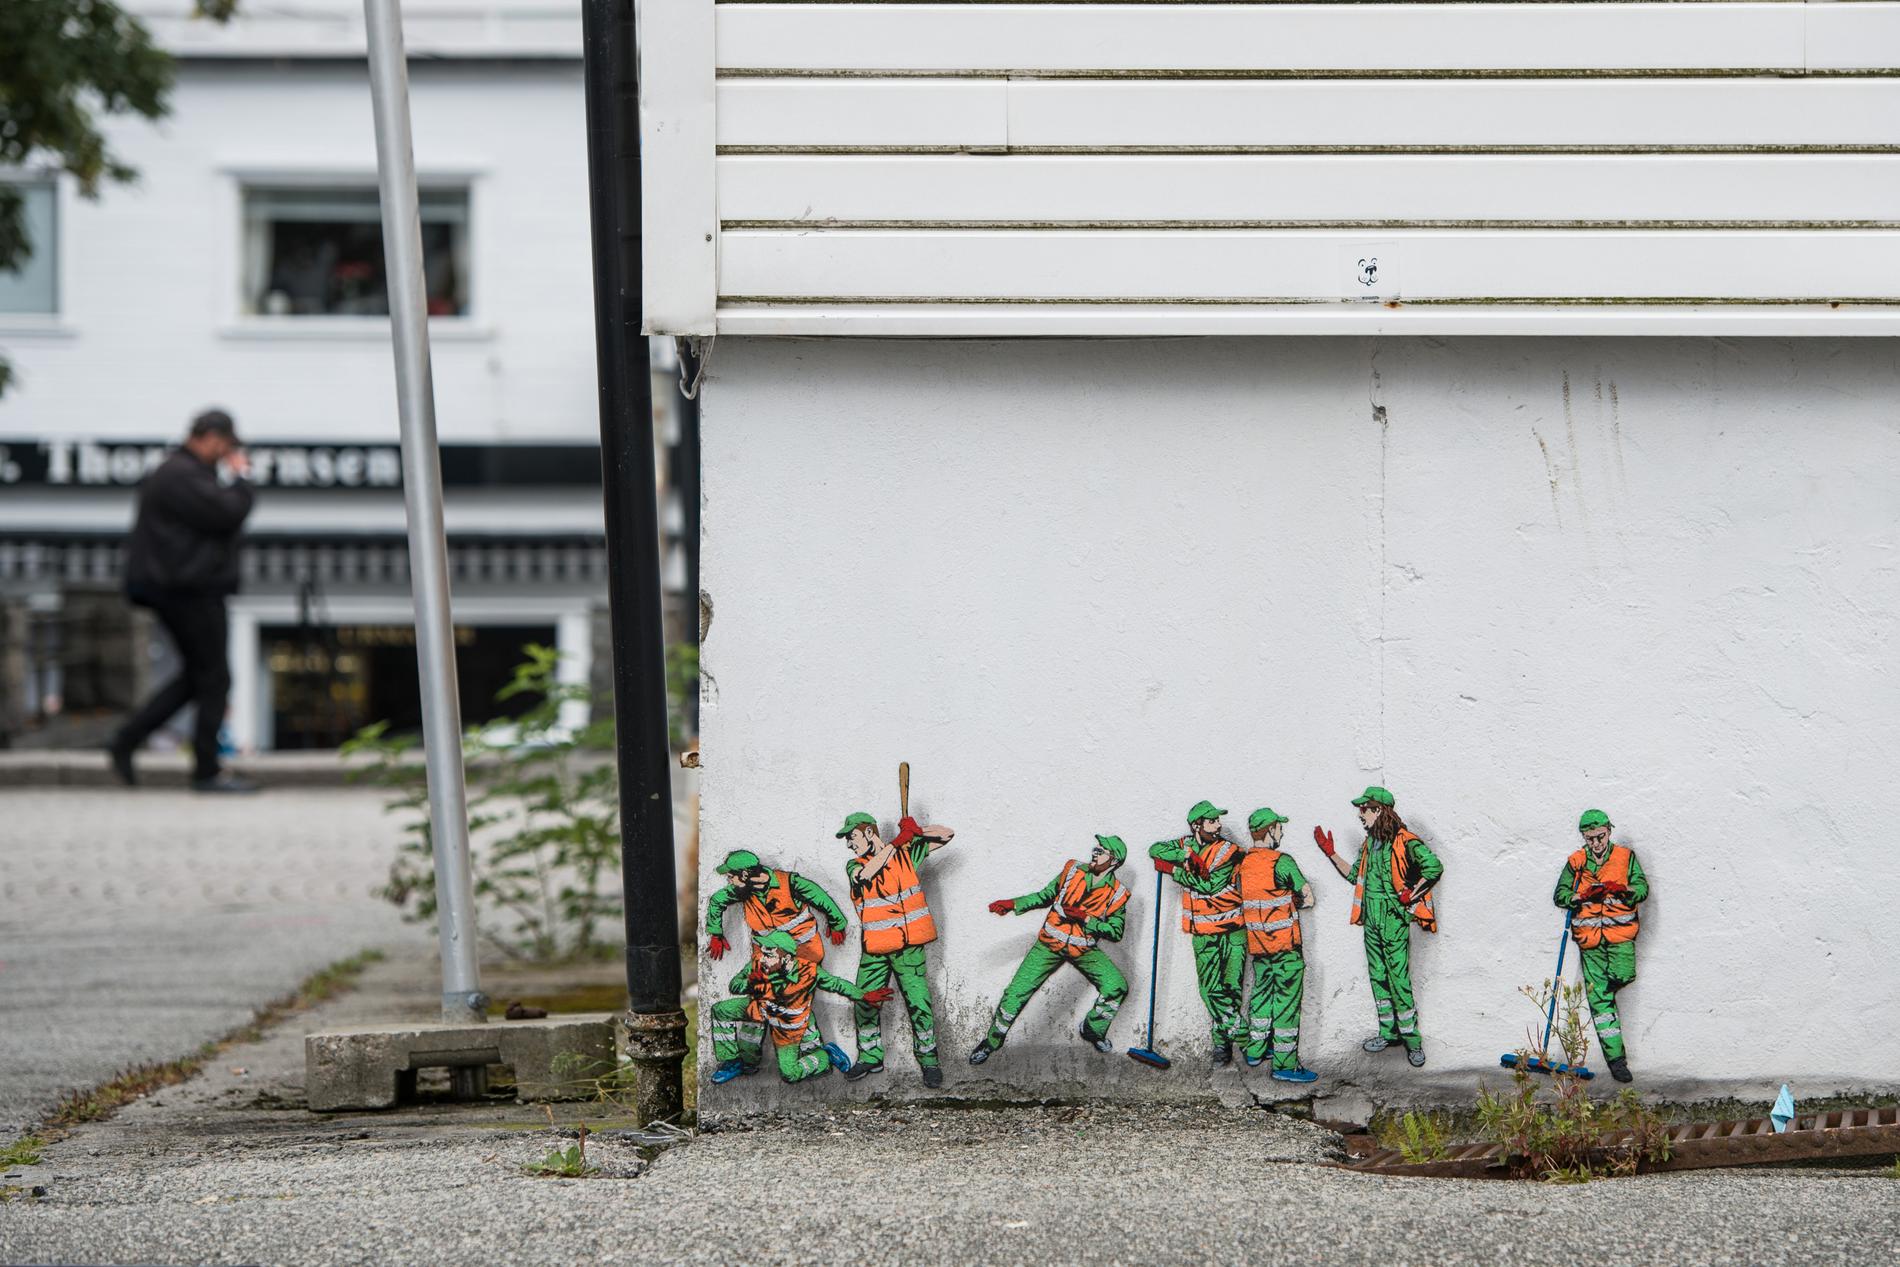 Det er blitt noen street art-verker i byen gjennom mange år med Nuart-festival. Både små og store!